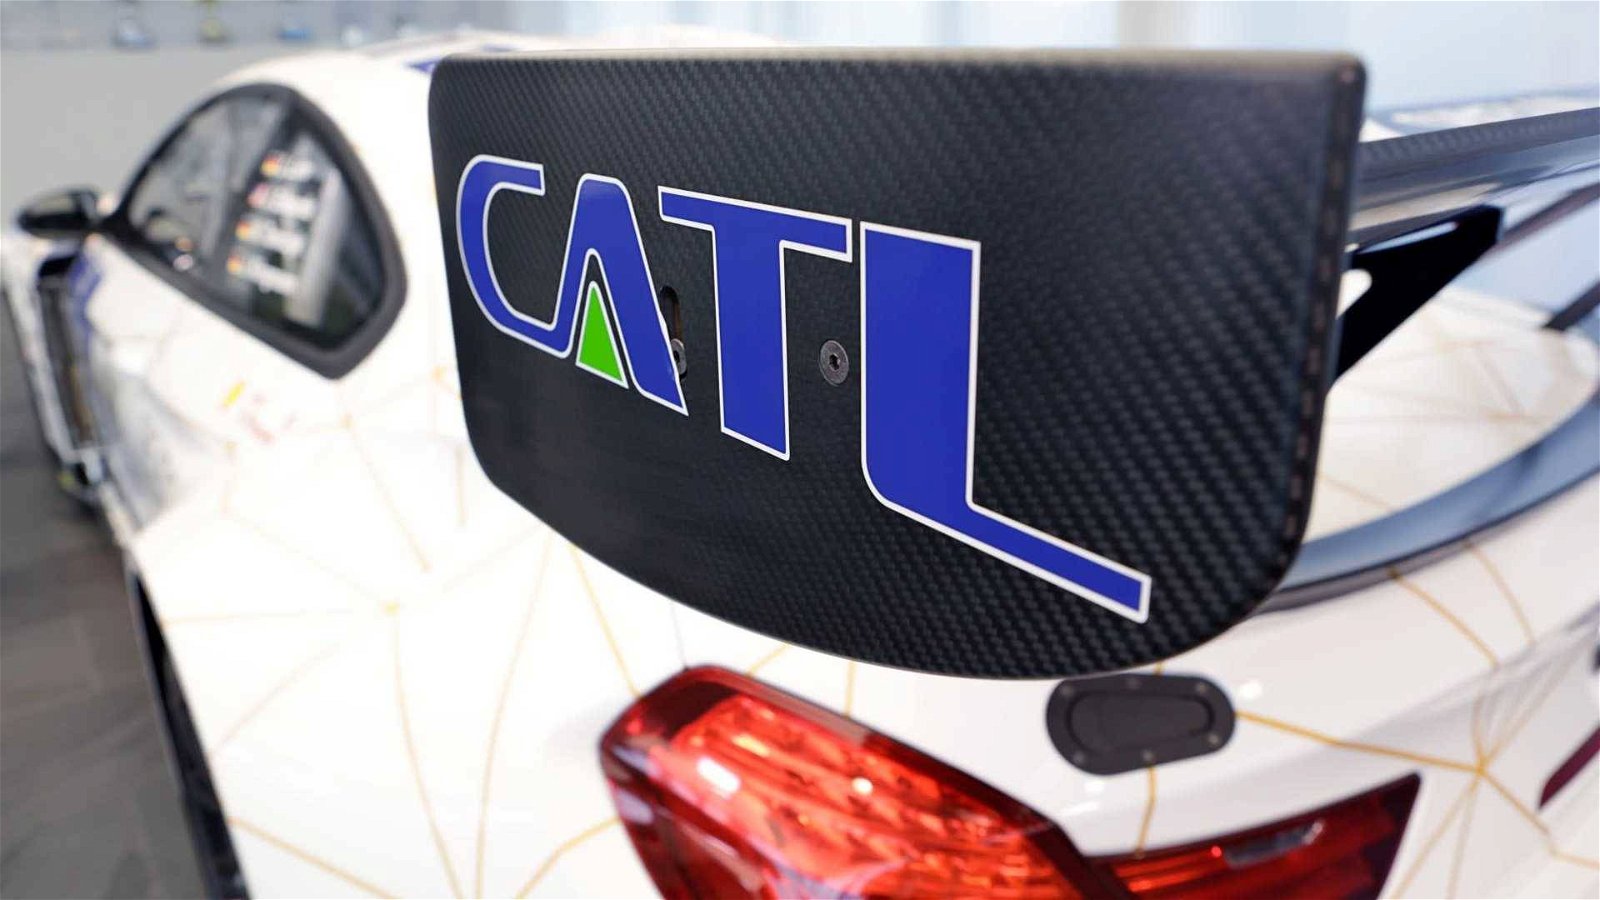 Immagine di CATL, la società estende la vita delle batterie a 2 milioni di km